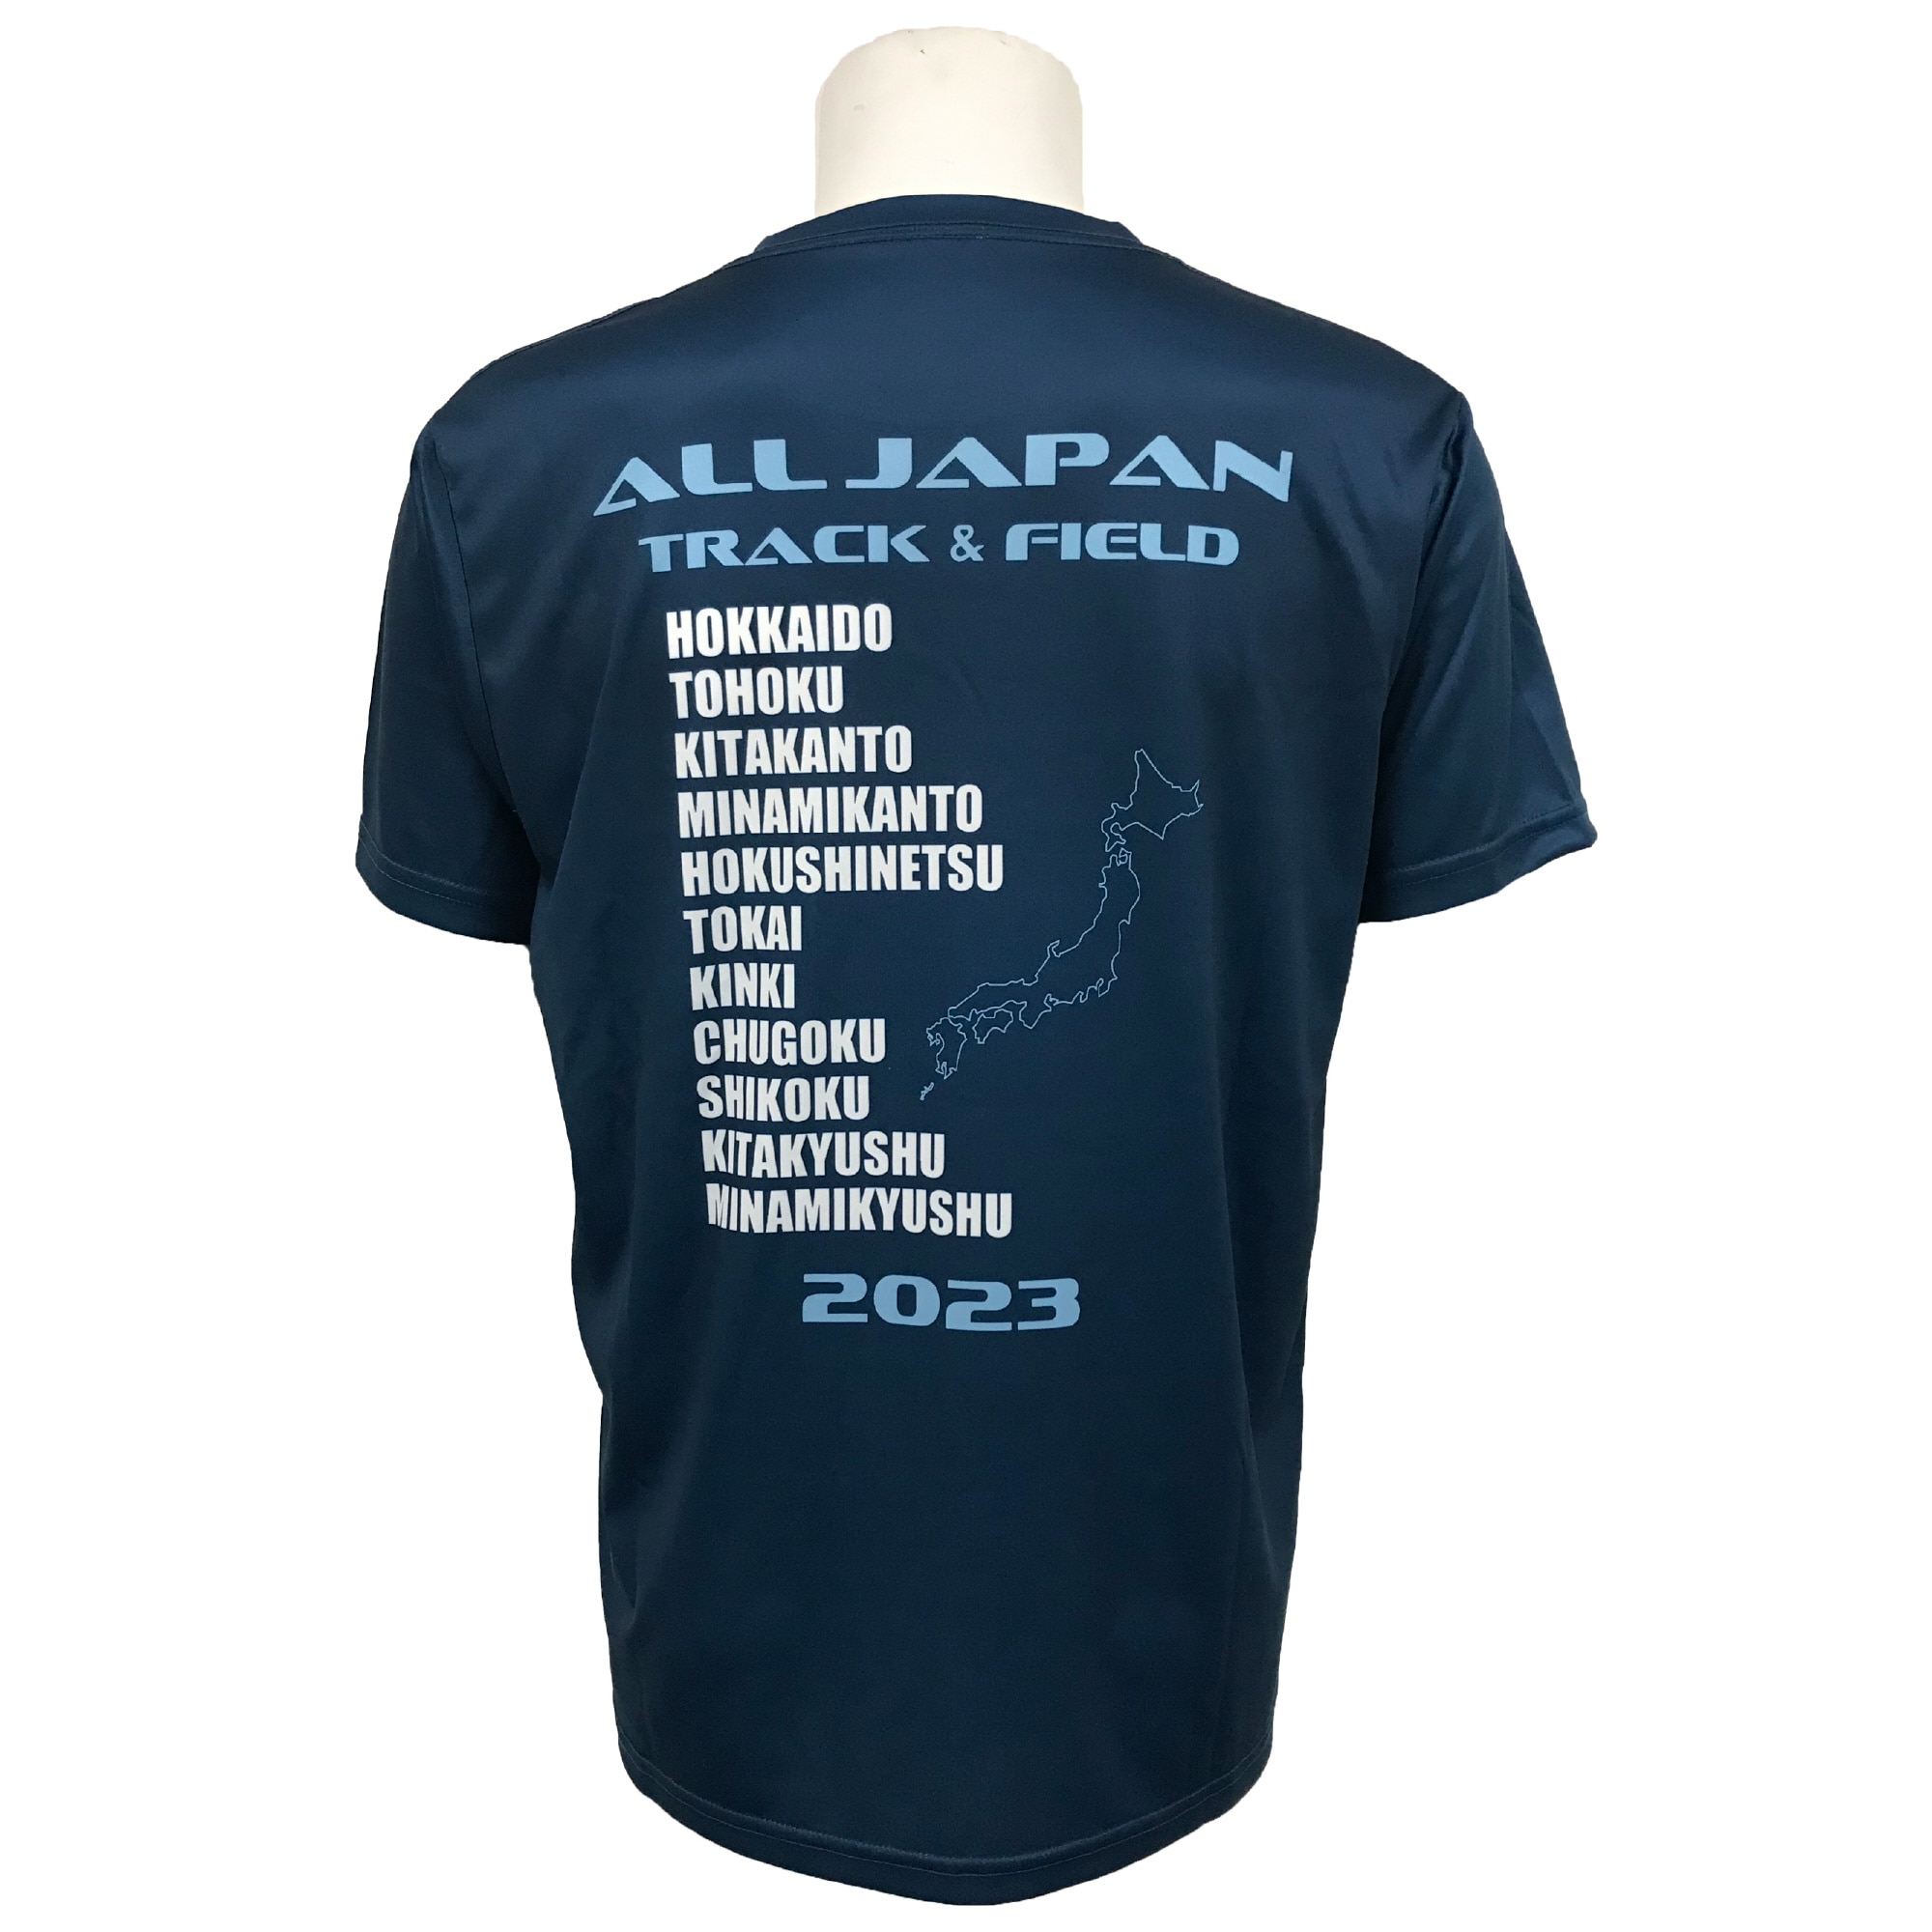 All Japan インターハイバレーボールTシャツ 2L - ウェア